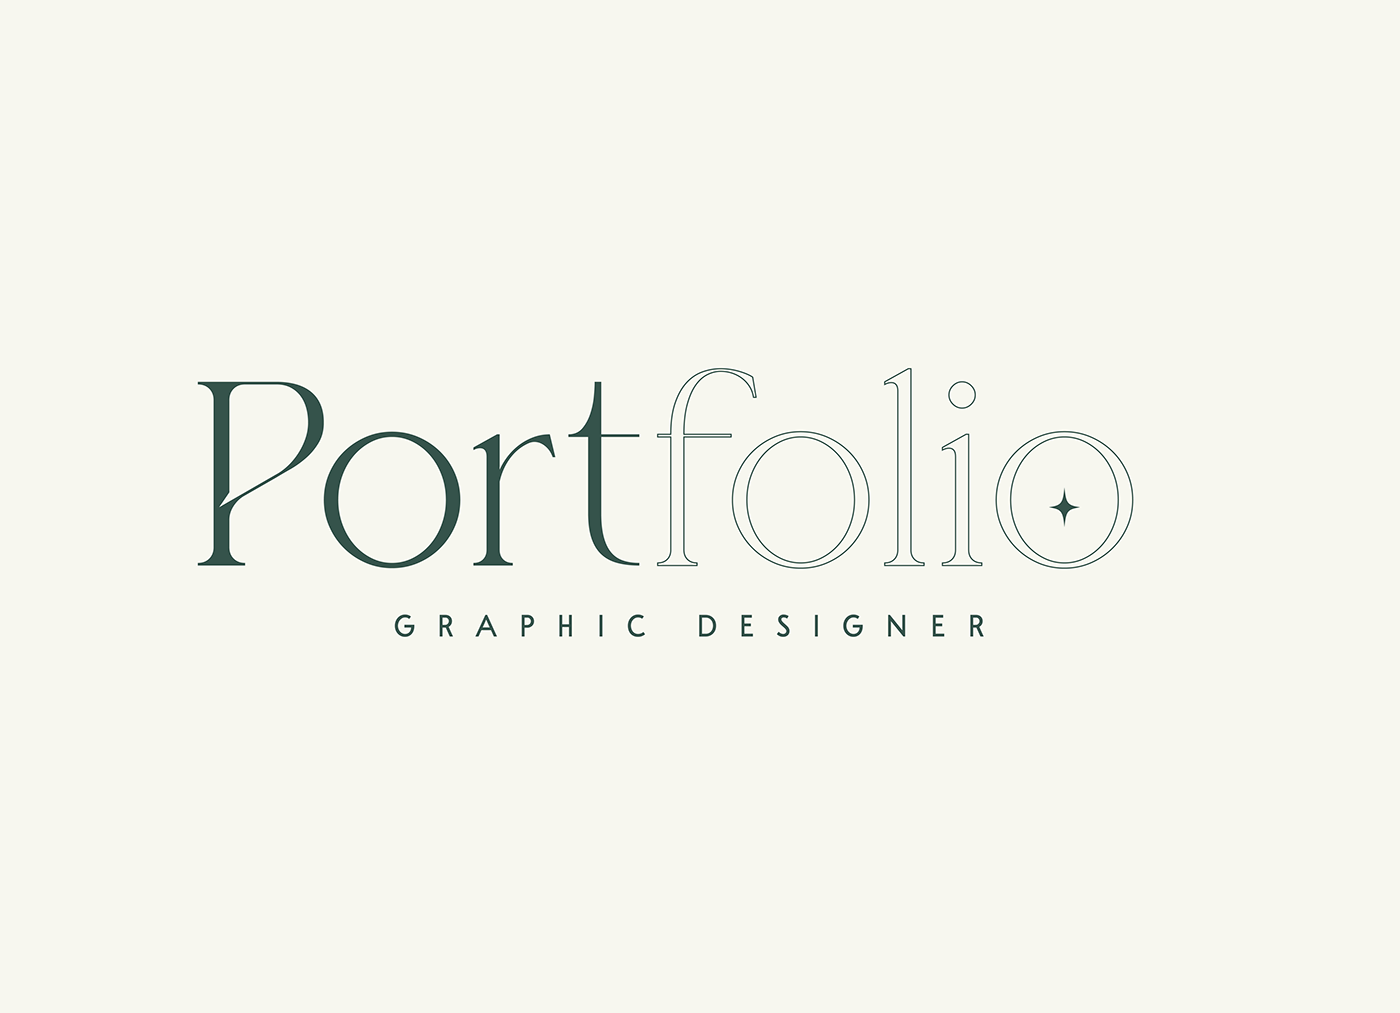 CV Graphic Designer portfolio Portfolio Design Resume uitm uitm perak uitm seri iskandar